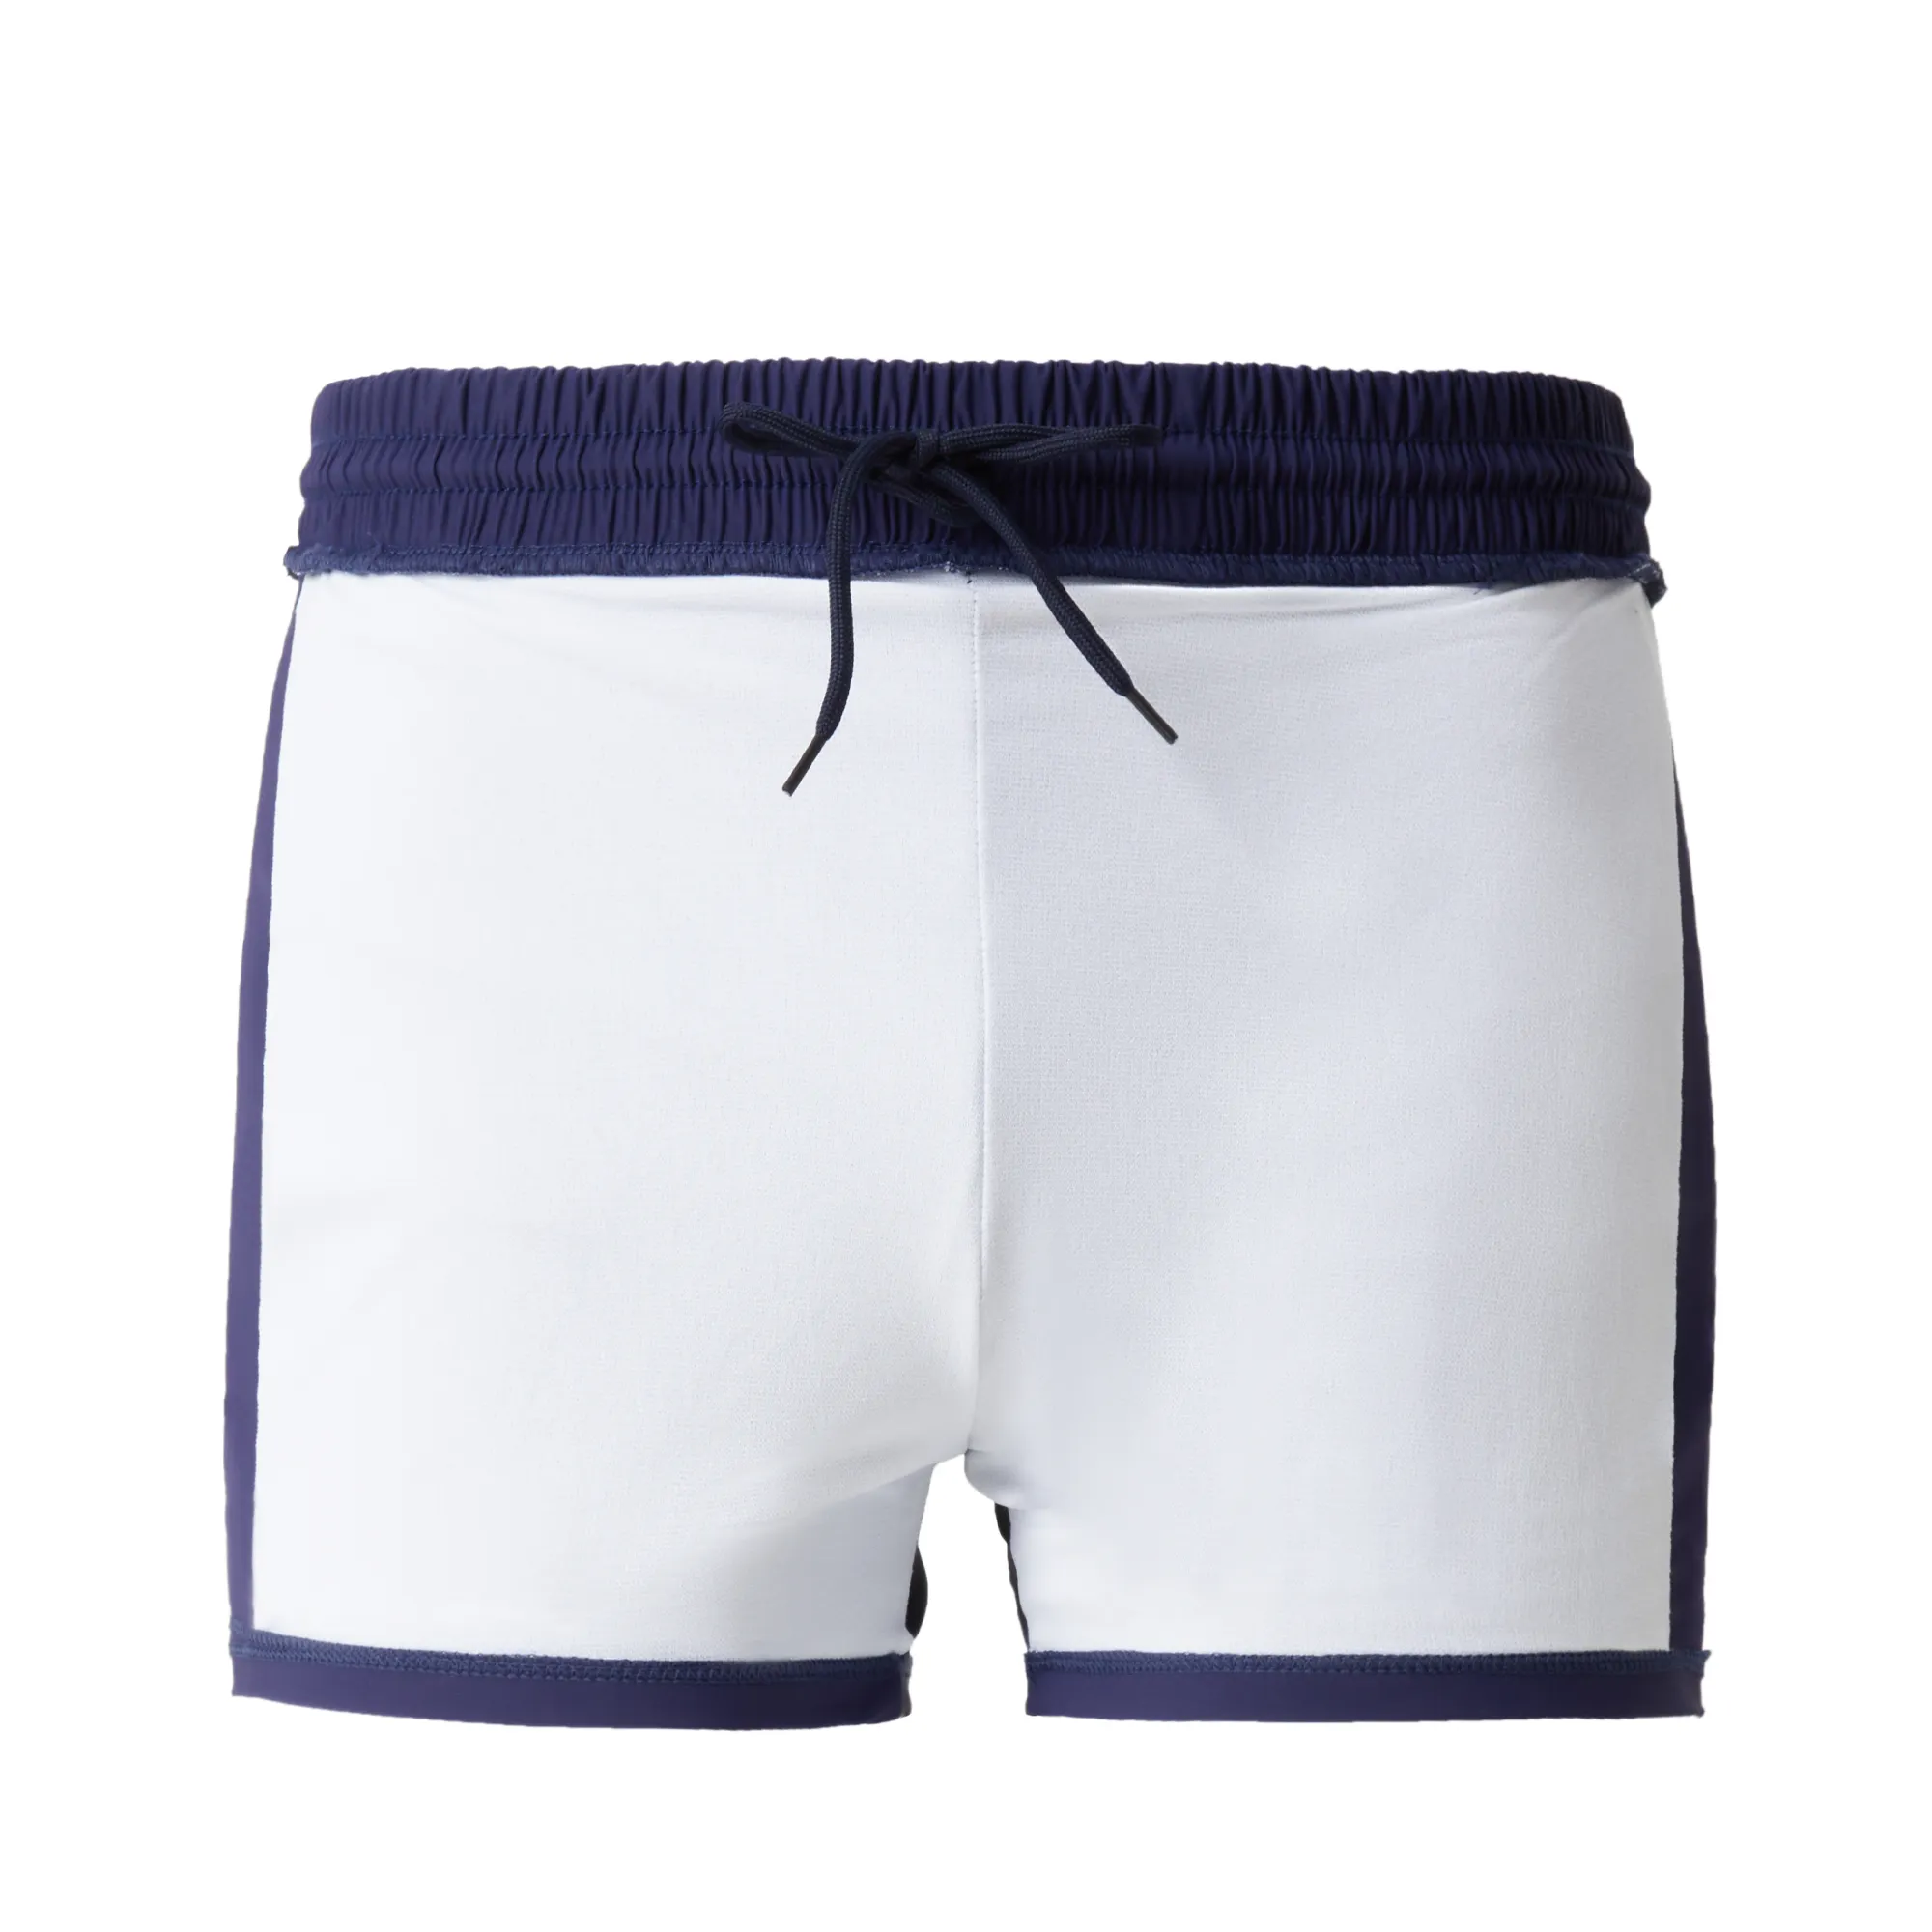 kundenspezifisches logo großhandel herren bademantel bade borad shorts jammer für jungen strand nylon 2 in 1 bedruckt schnelltrocknend hohe qualität